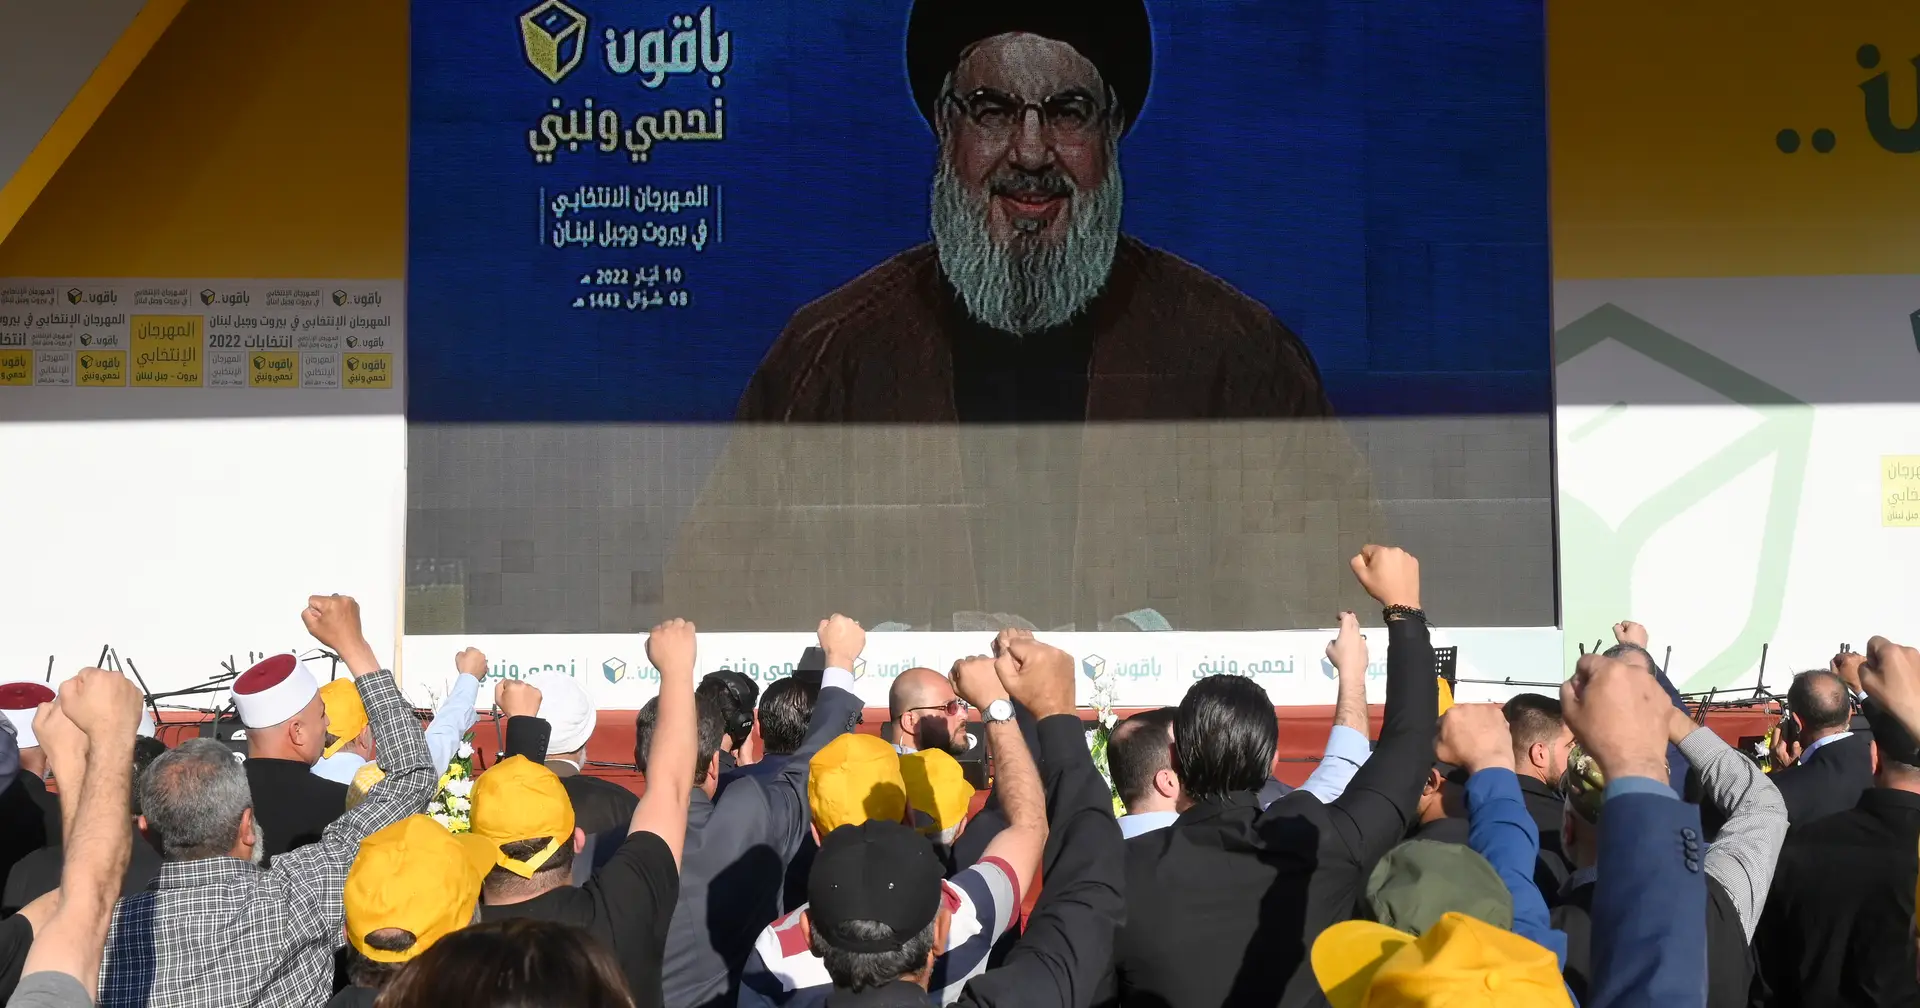 Hezbollah pede “cooperação” no novo parlamento libanês “sem maioria”